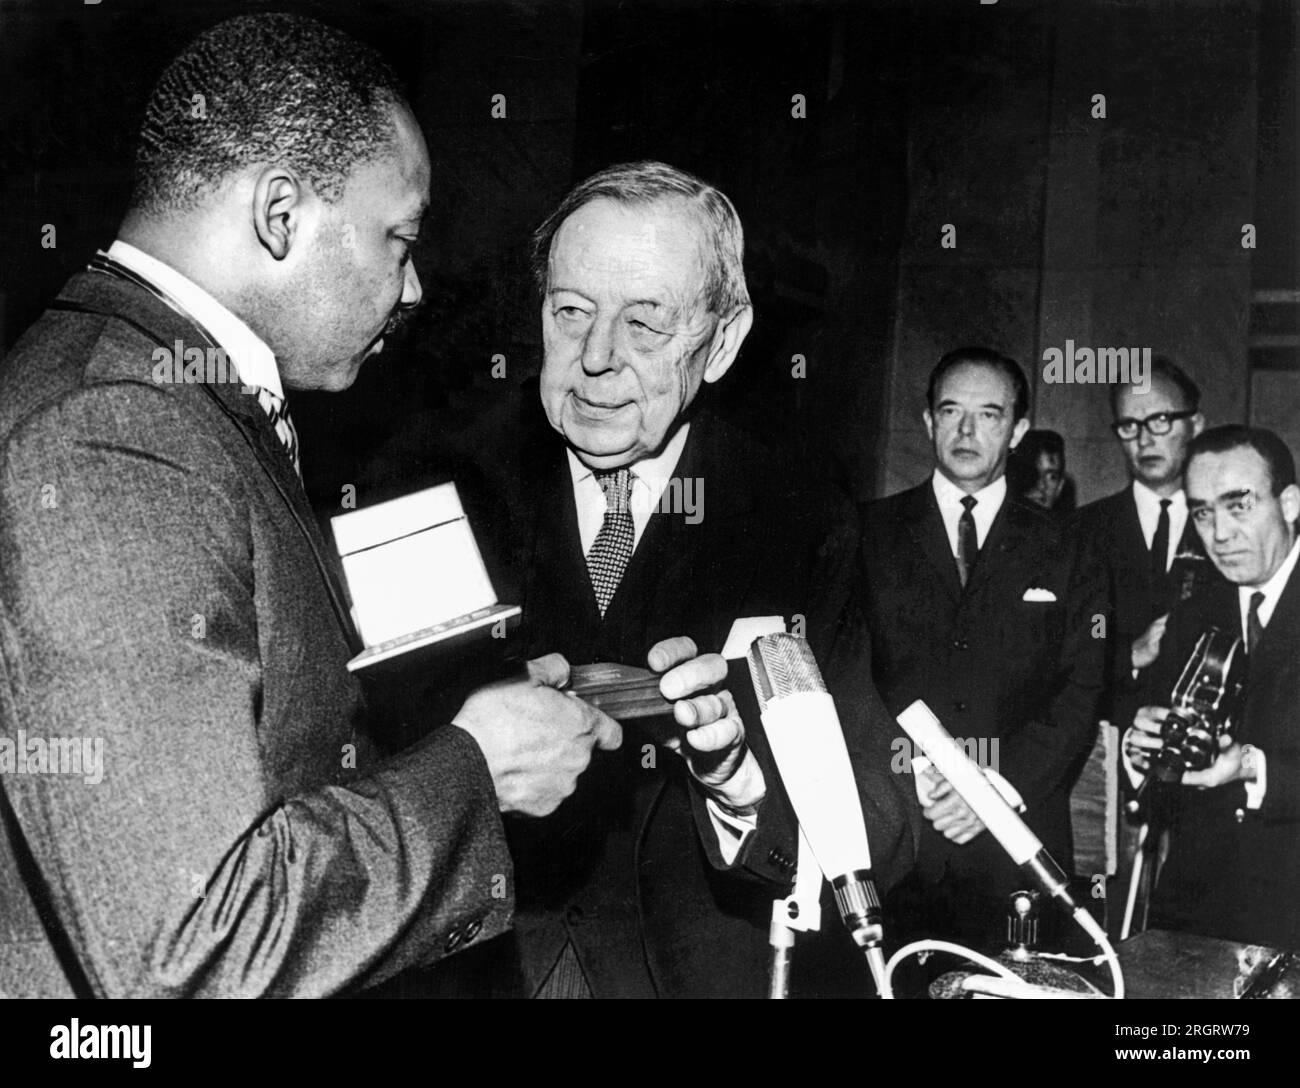 Oslo, Norvegia, 10 dicembre 1964 il Rev. Martin Luther King, Jr., riceve il premio Nobel per la pace da Gunnar Jann, presidente del Comitato del Premio Nobel, per la sua leadership "non violenta" del movimento americano per i diritti civili. Foto Stock